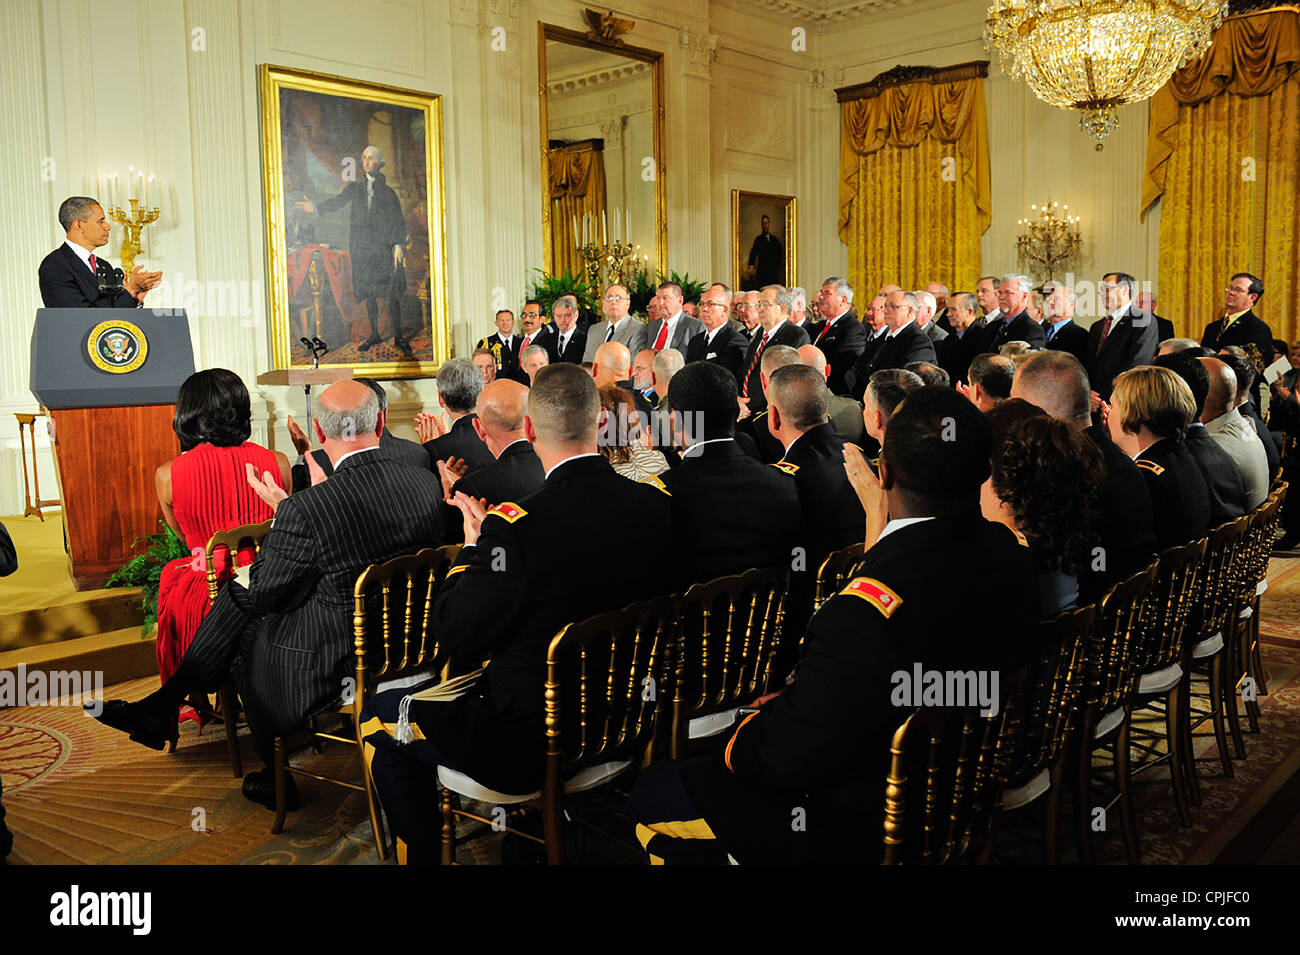 US-Präsident Barack Obama spricht bei einer Medal Of Honor Award Zeremonie zu Ehren des Leslie H. Sabo Jr., im Weißen Haus 16. Mai 2012 in Washington, DC. Sabo ein Soldat mit der 101. US-Luftlandedivision wurde posthum die Medal Of Honor für Tapferkeit in Vietnam. Stockfoto